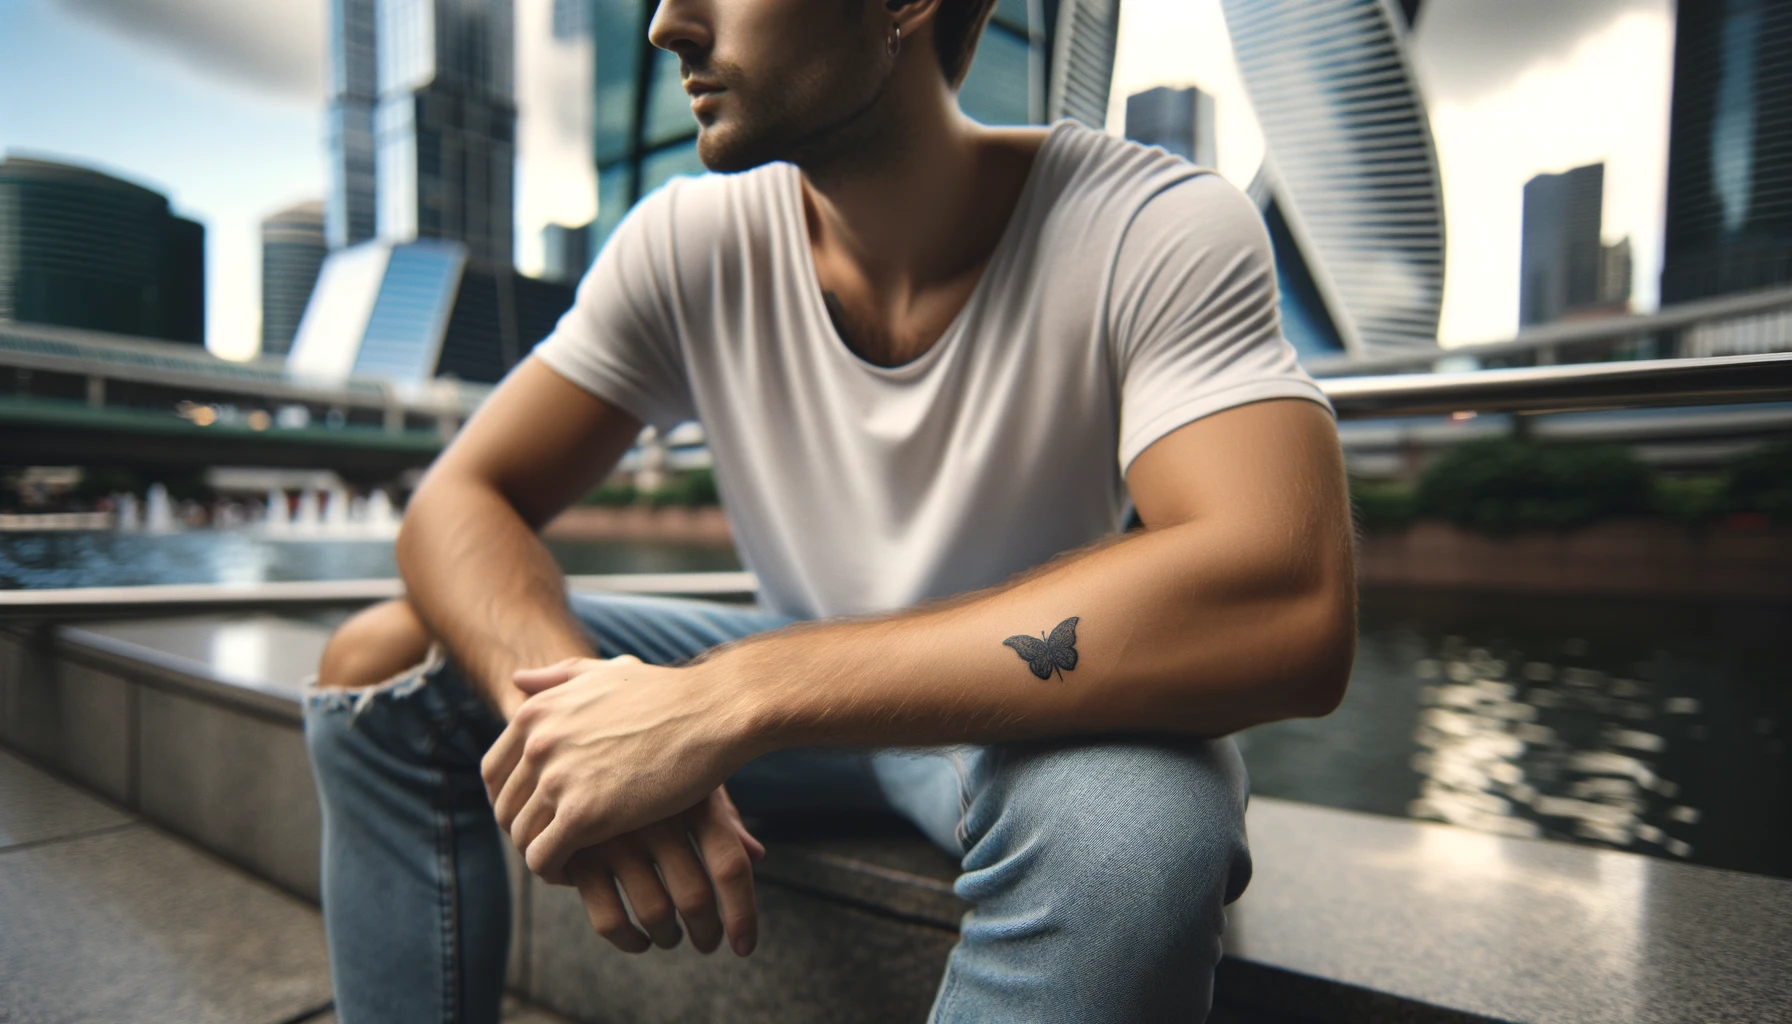 Tatuaż malutki na ręce męskiej